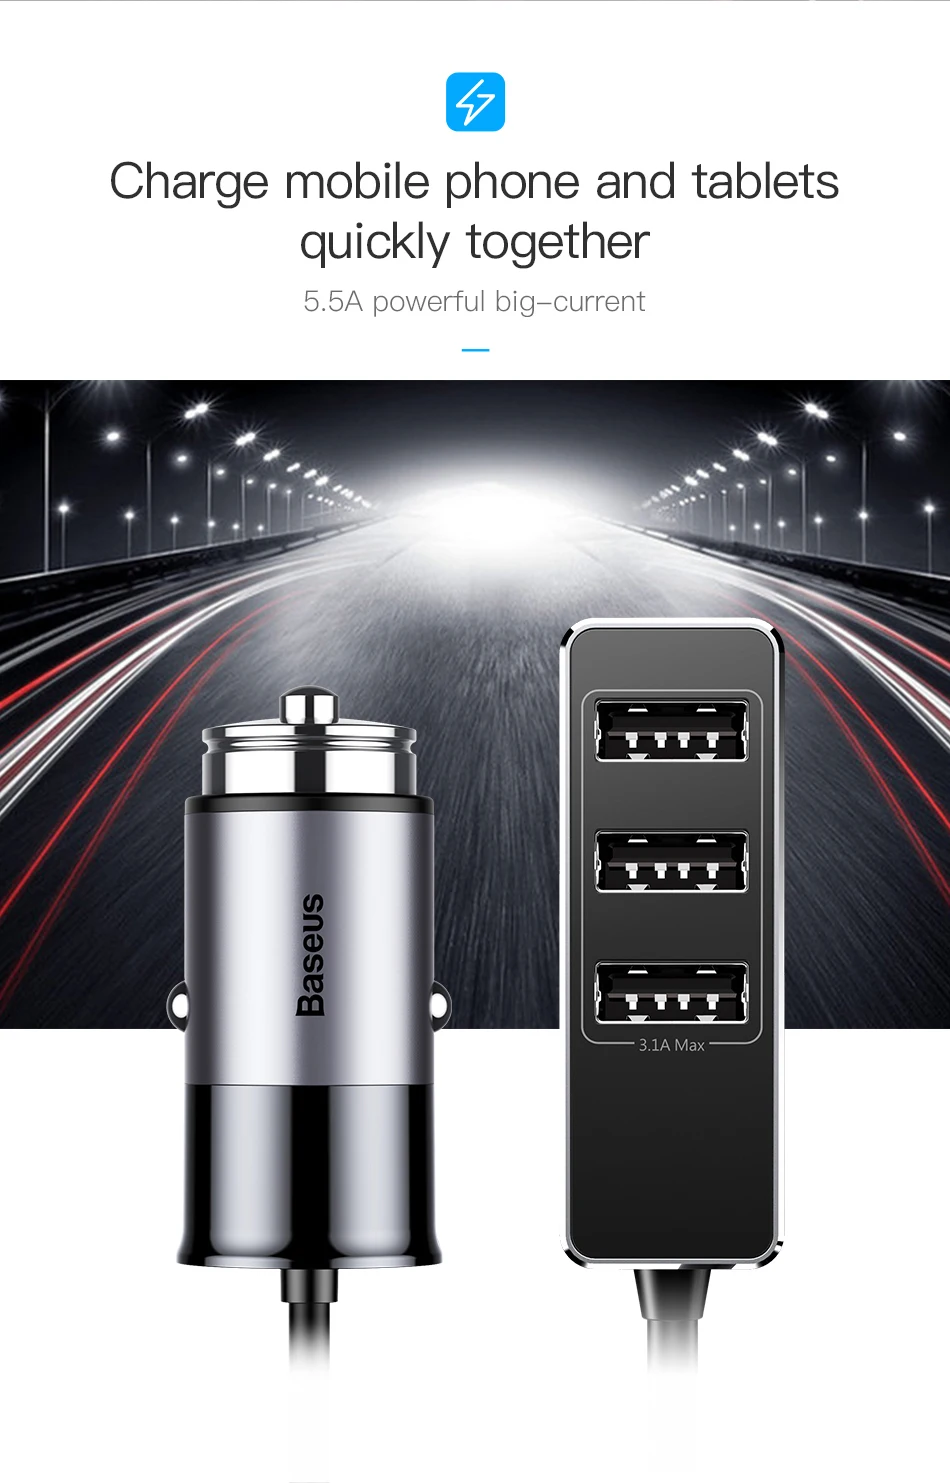 Baseus мульти 4 порта USB Автомобильное зарядное устройство несколько 5.5A турбо Быстрая автомобильная зарядка USB зарядное устройство для iPhone X